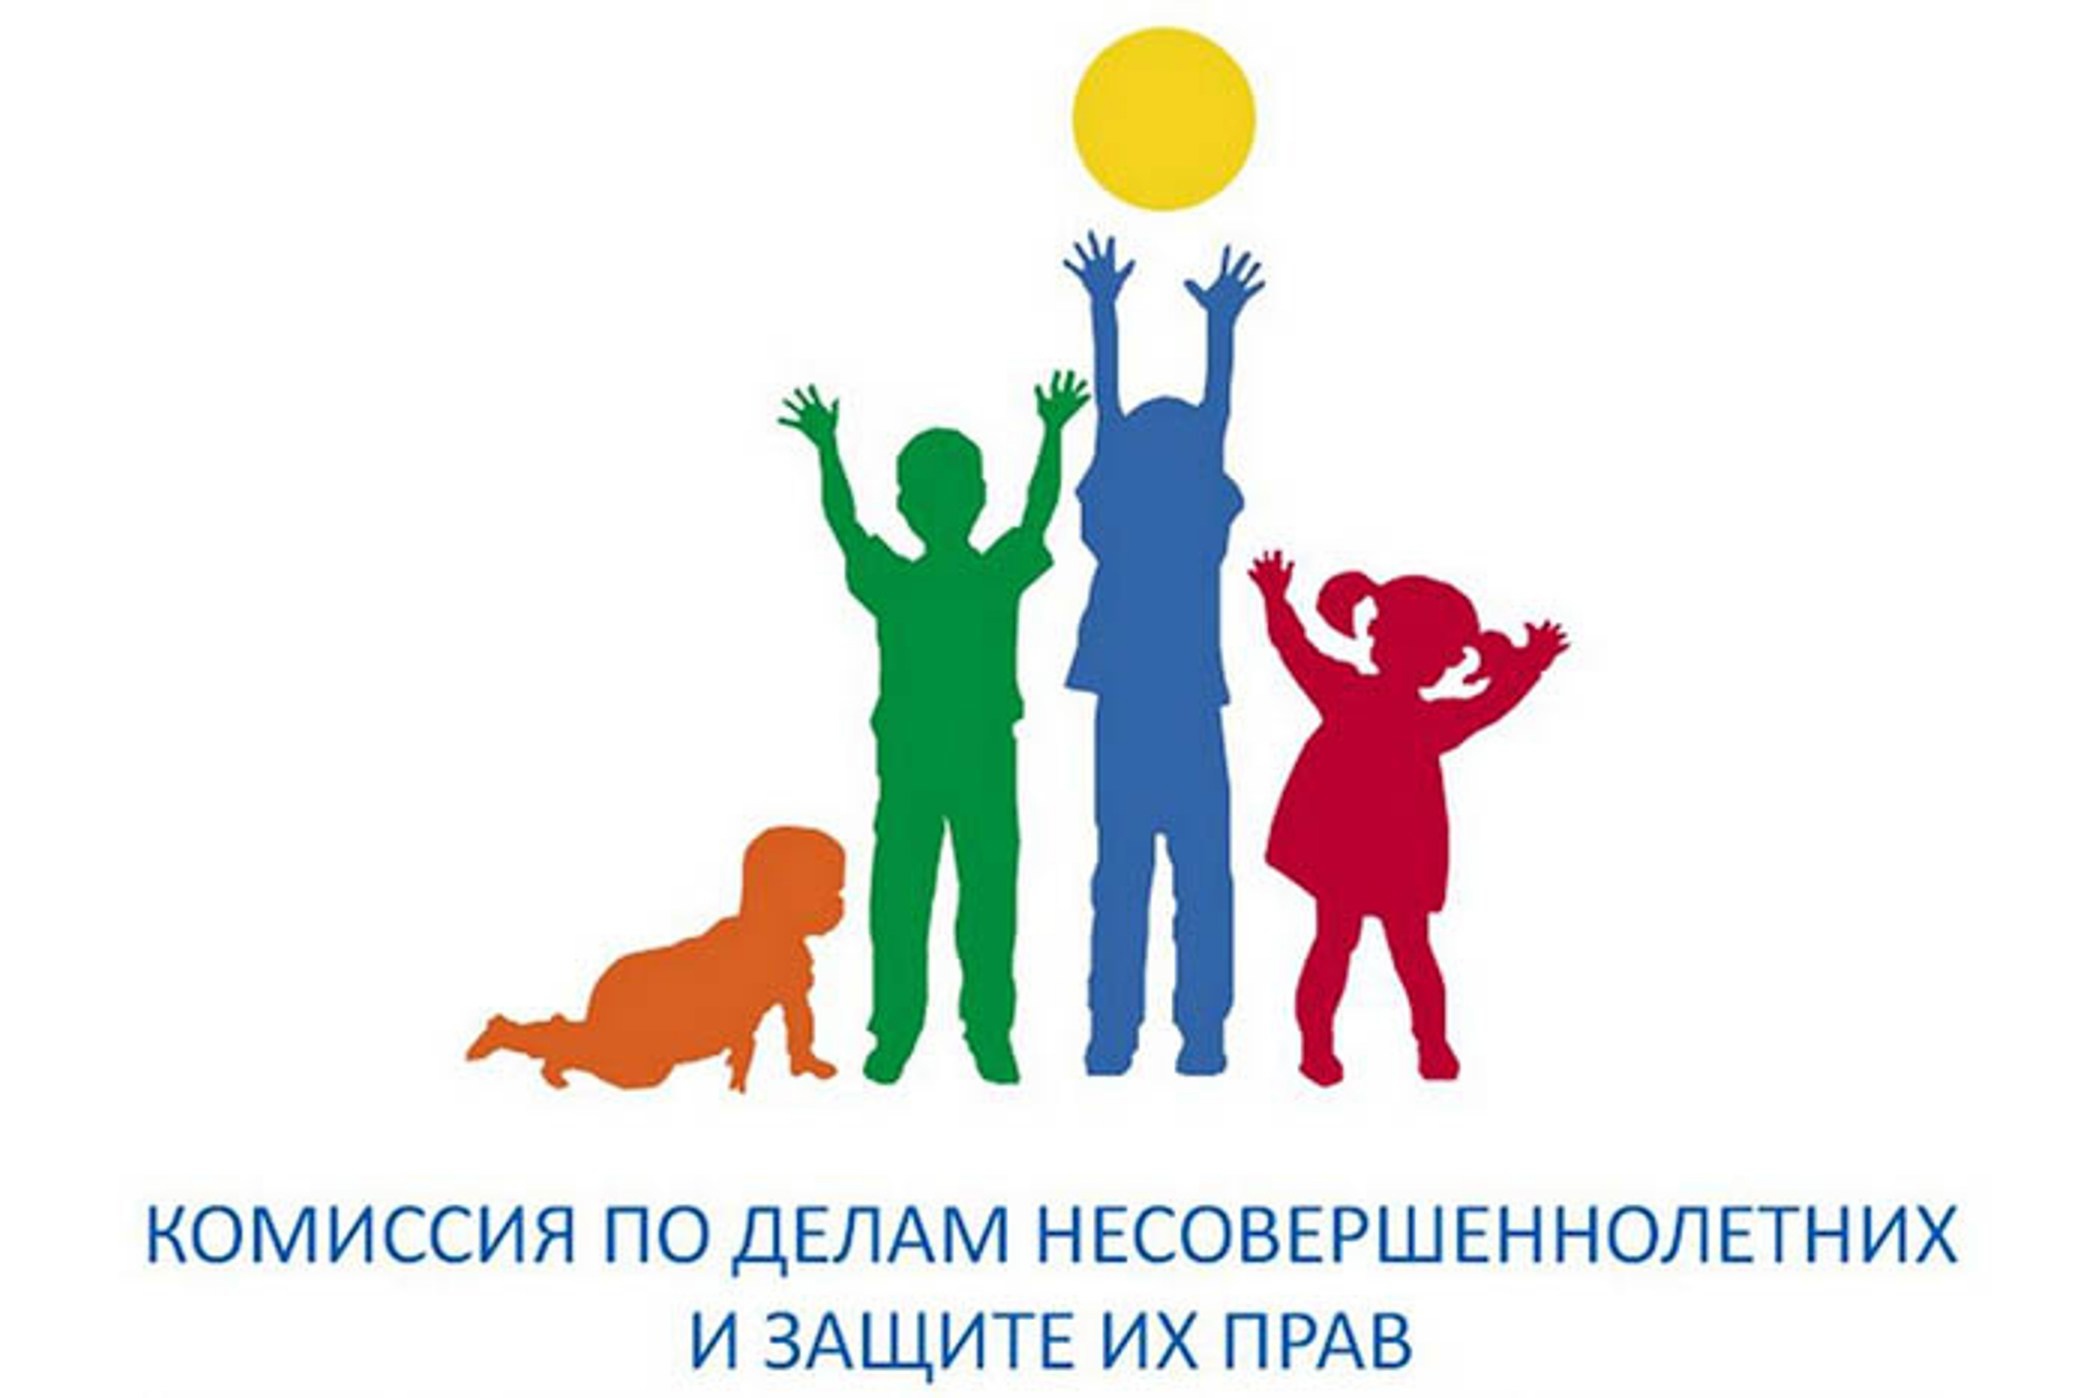 Ежегодно 20 ноября в Российской Федерации проводится Всероссийская акция «День правовой помощи детям»..